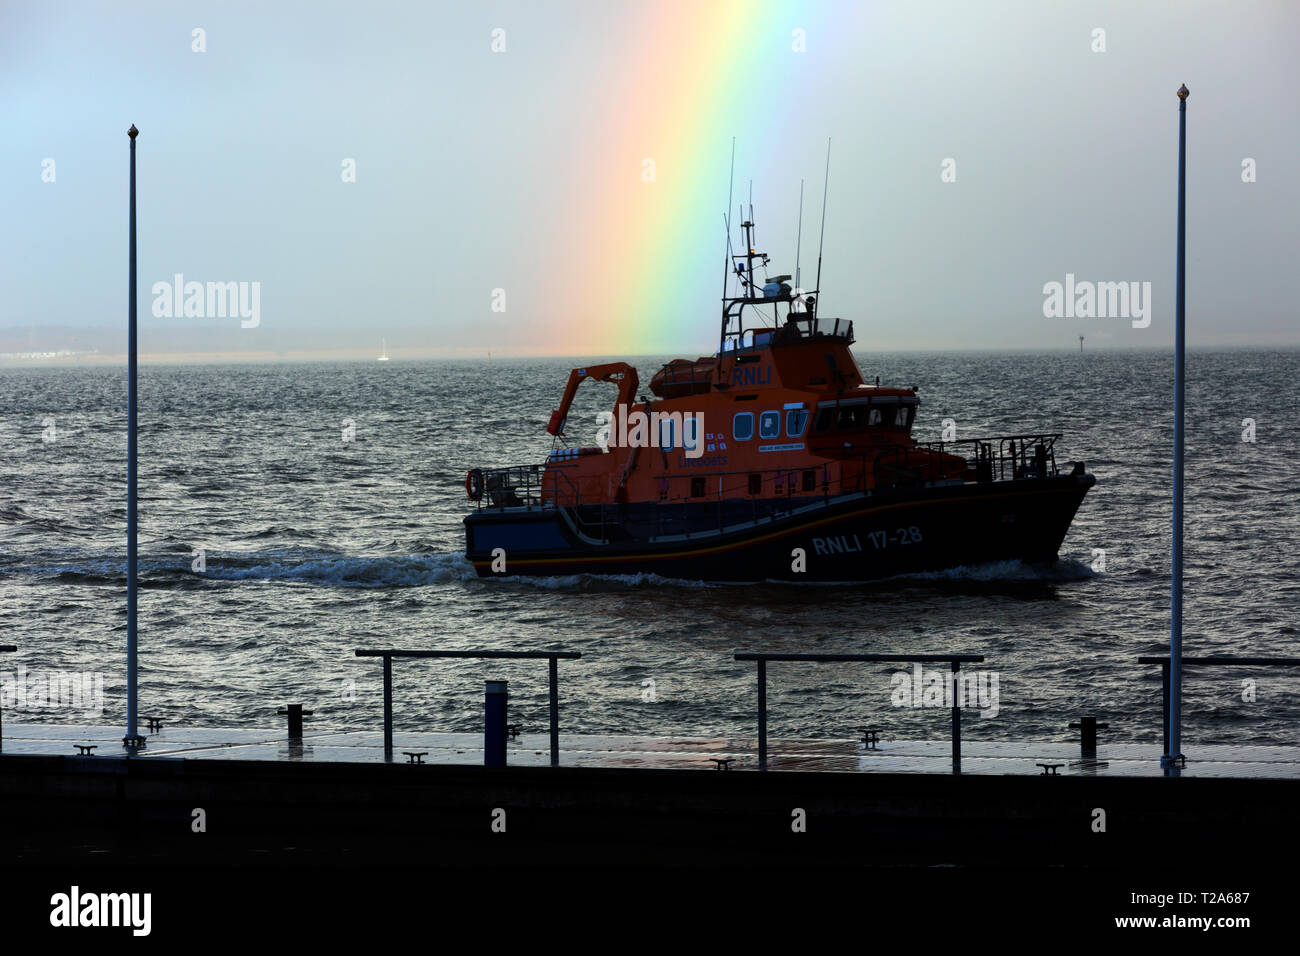 Enorme,Tug,scialuppa di salvataggio,tanker,yacht,grandi, luminose, rainbow,oltre,mare,Cowes,Isle of Wight,Inghilterra, Foto Stock